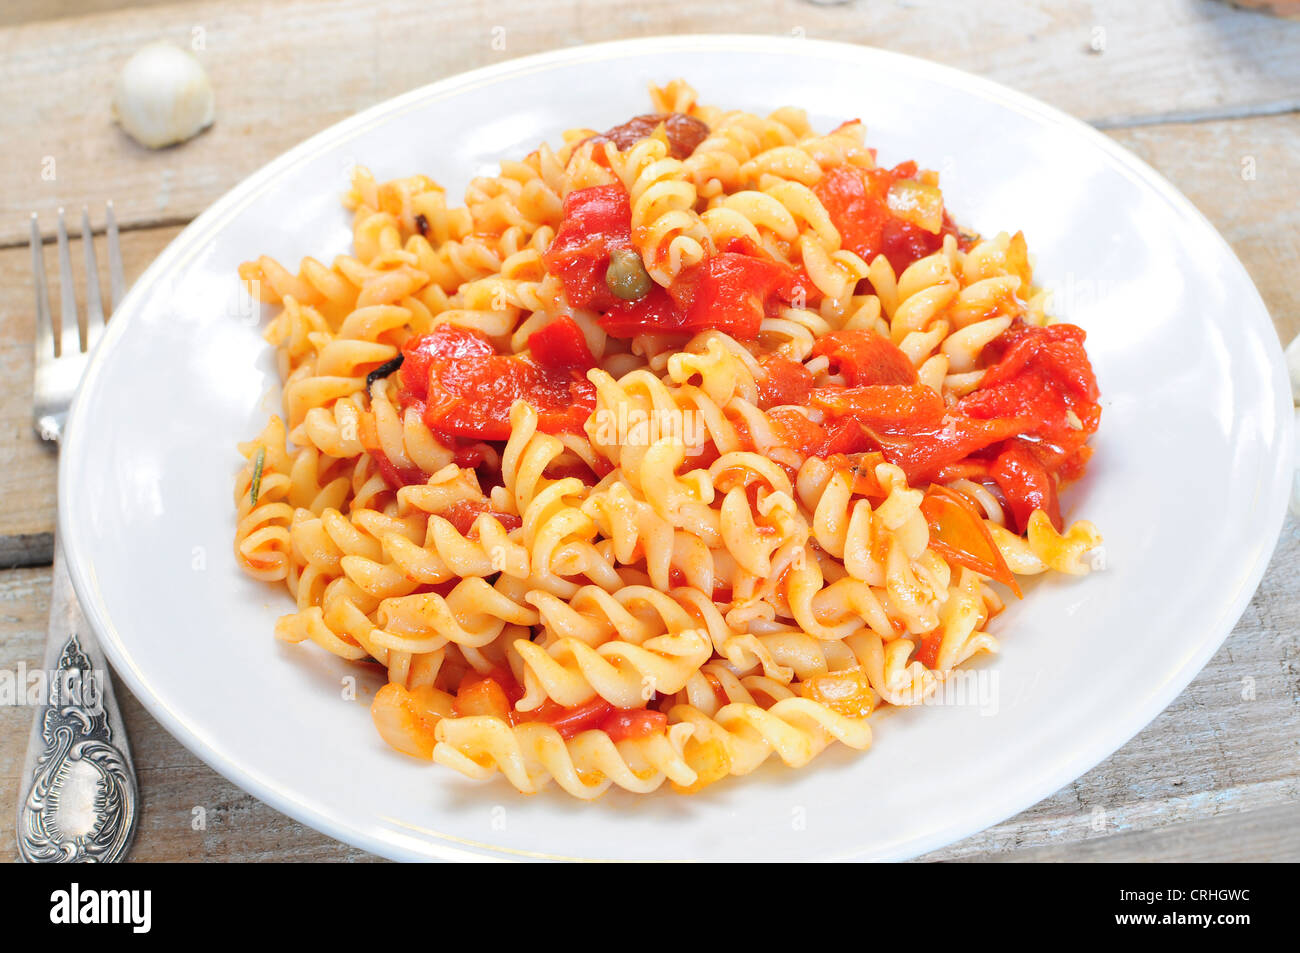 Nudelgericht - Fusili mit Tomaten-Paprika-Sauce gekocht Stockfoto